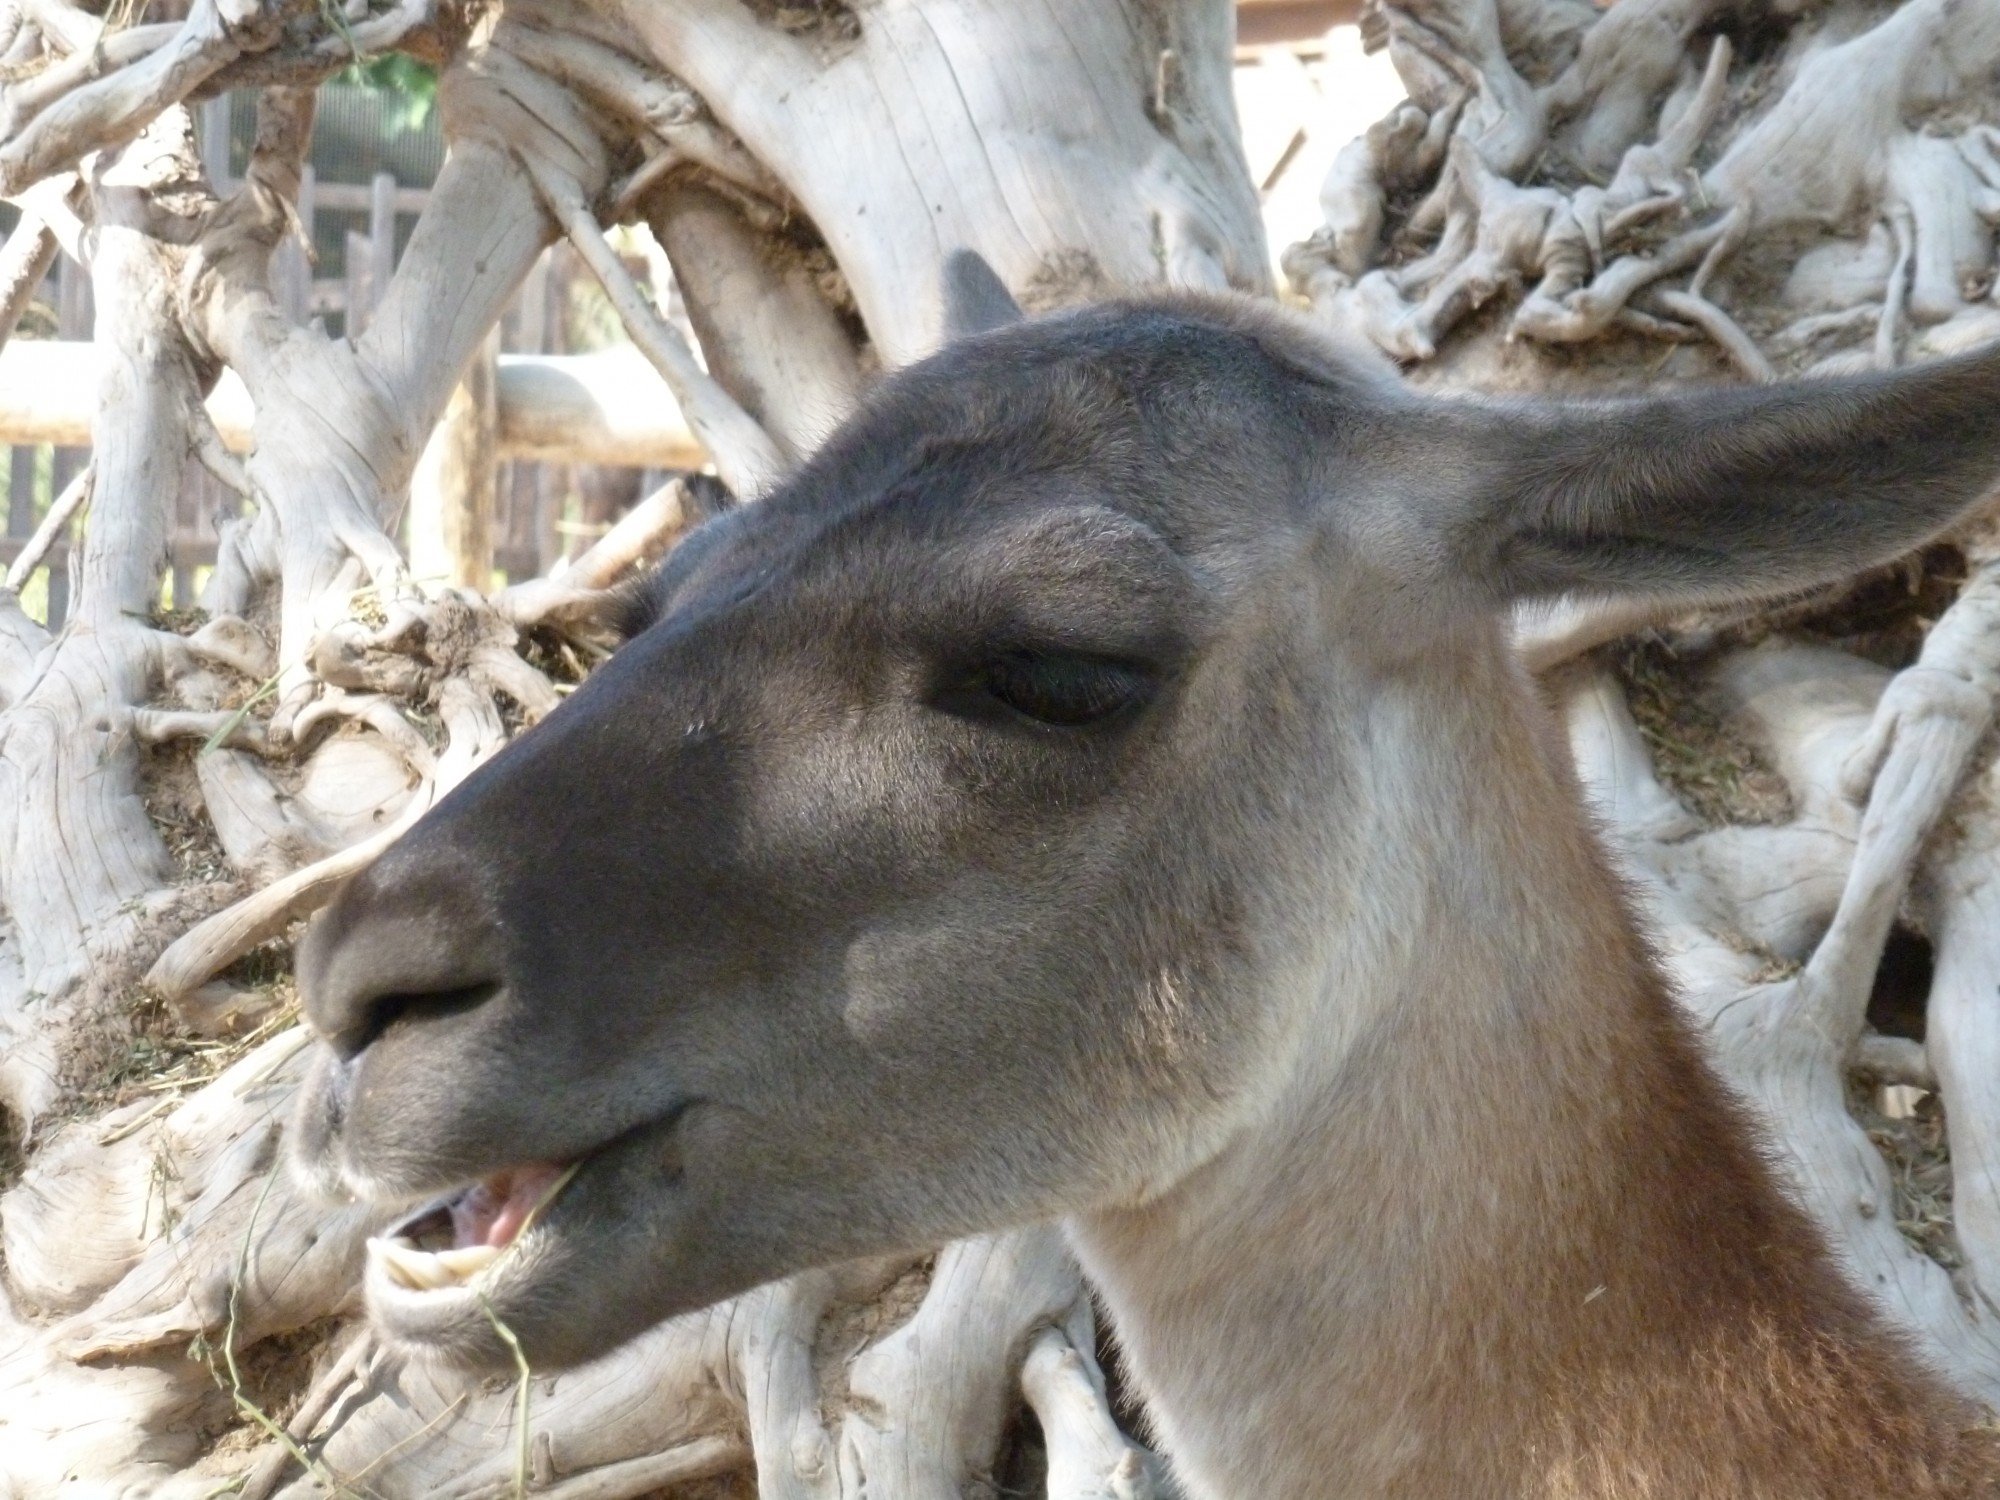 Le guanaco, forme sauvage du lama, est présent à la Ferme Exotique